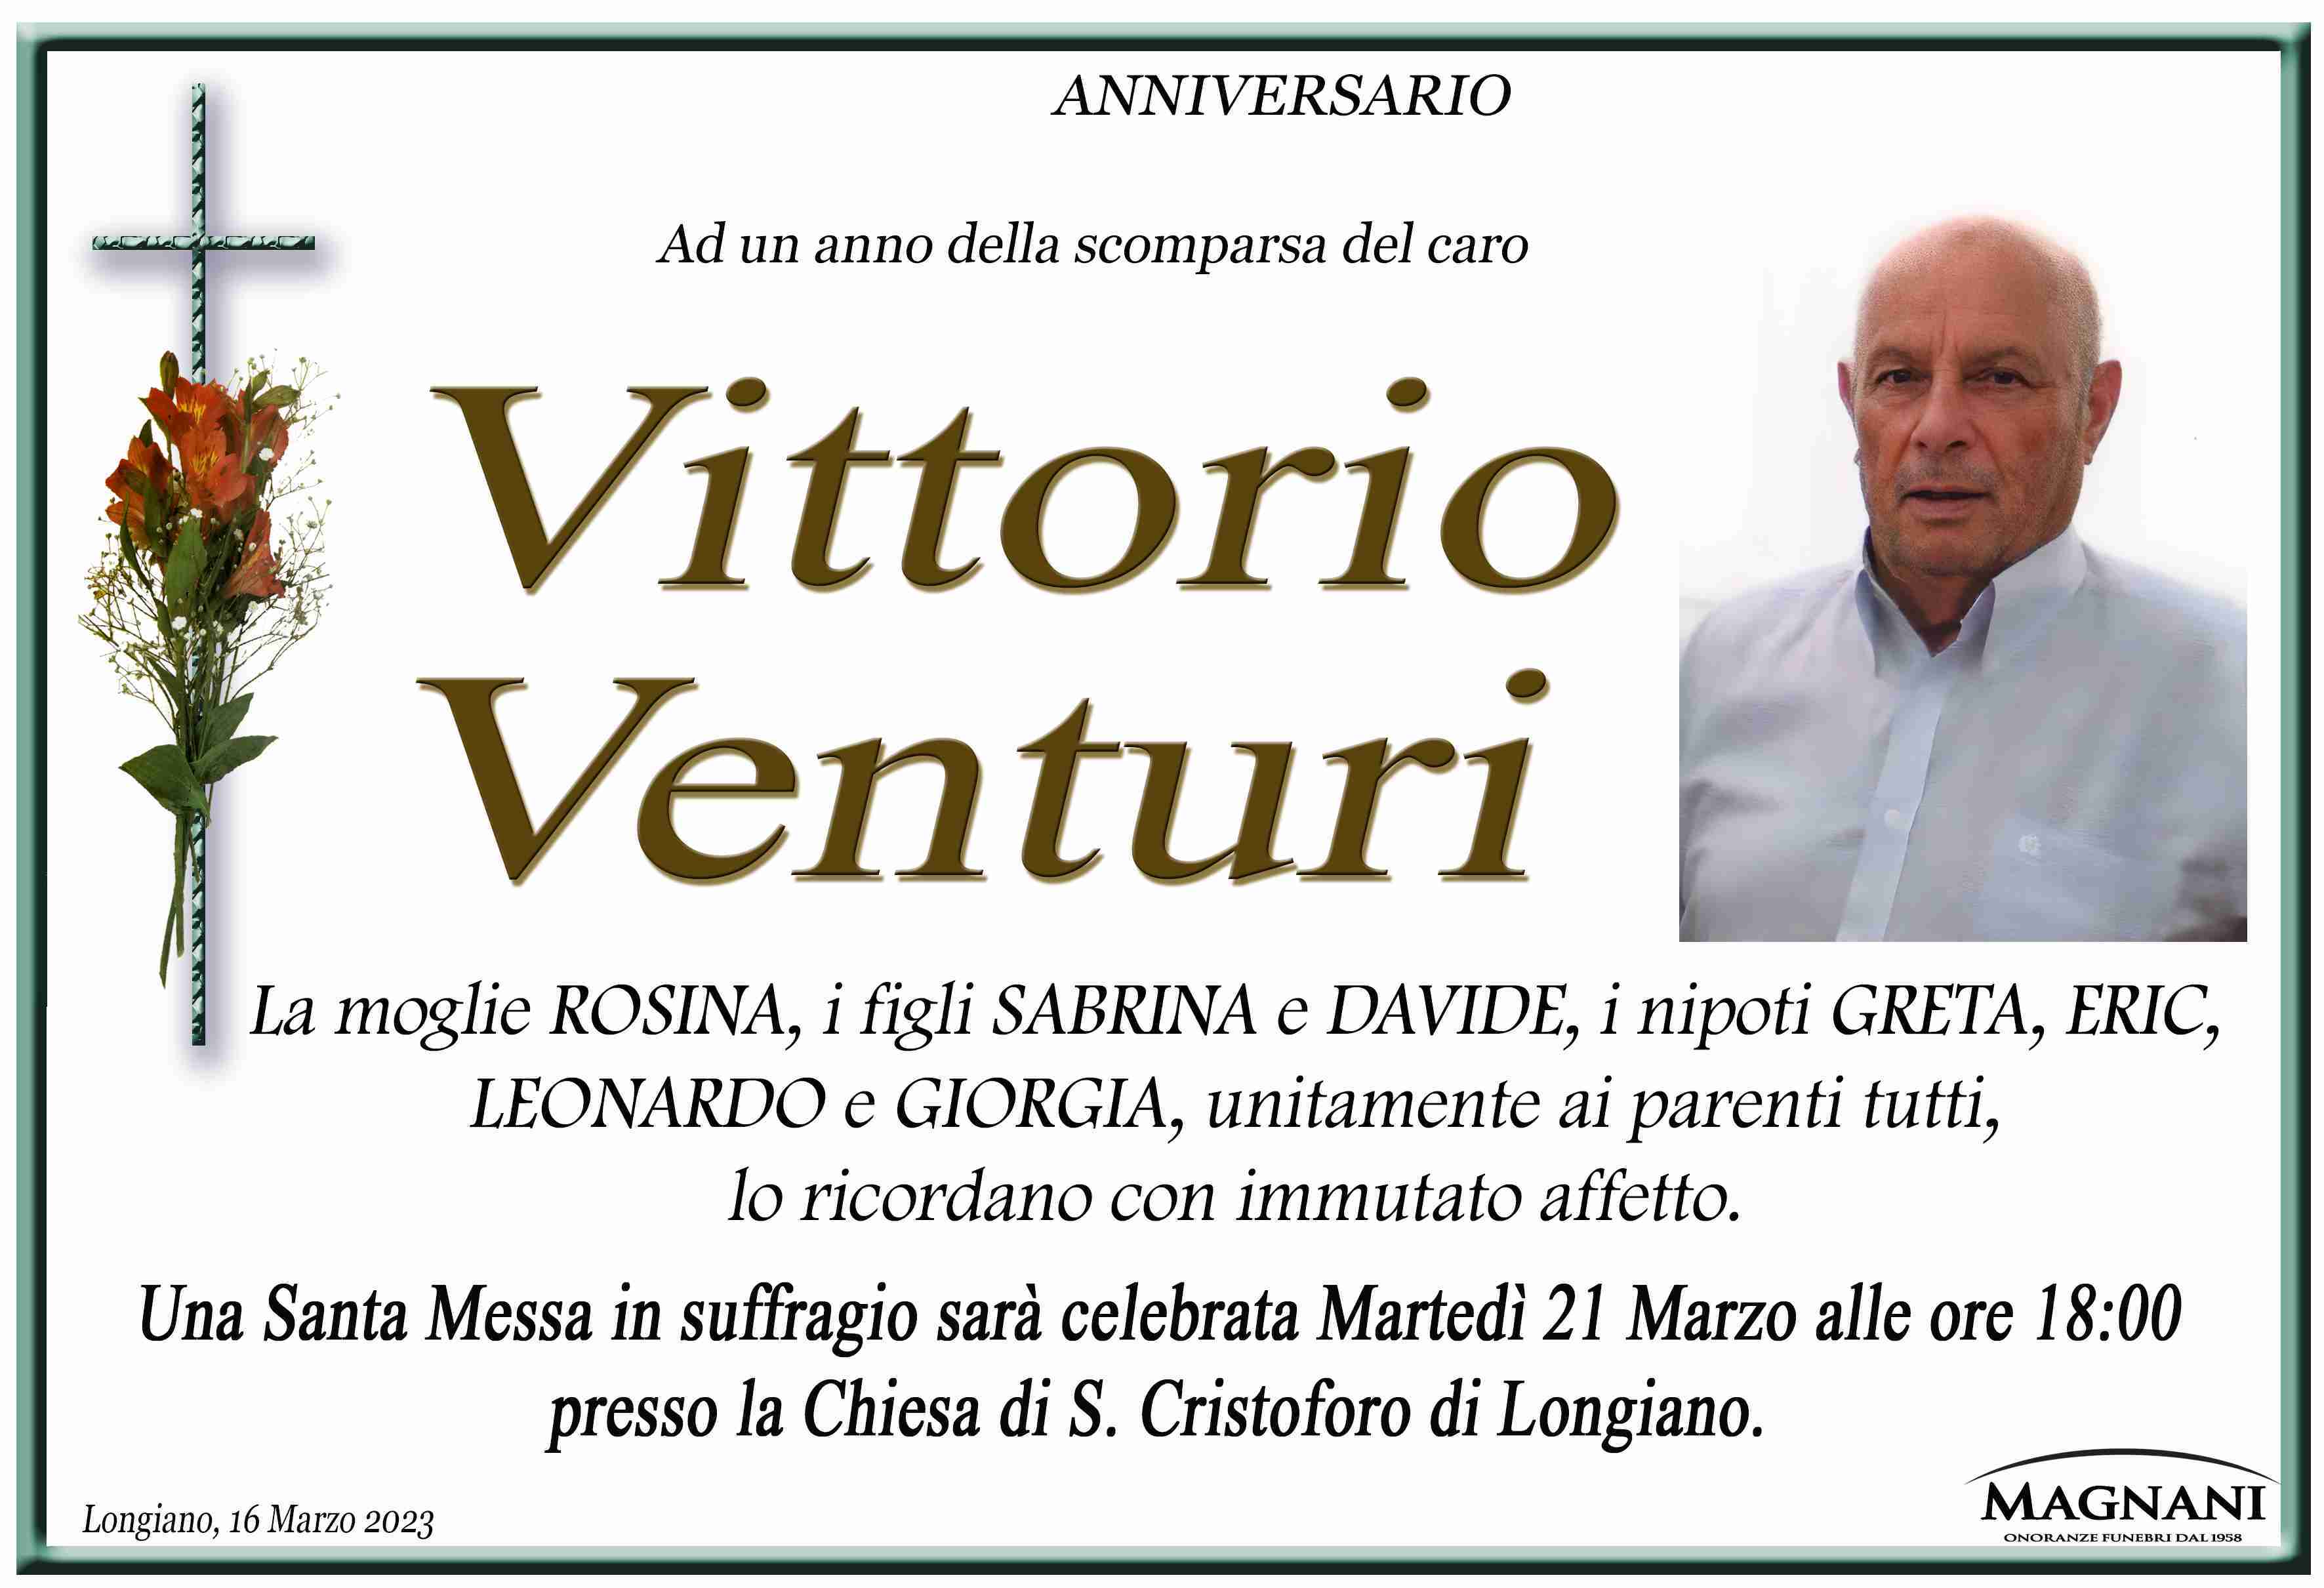 Venturi Vittorio